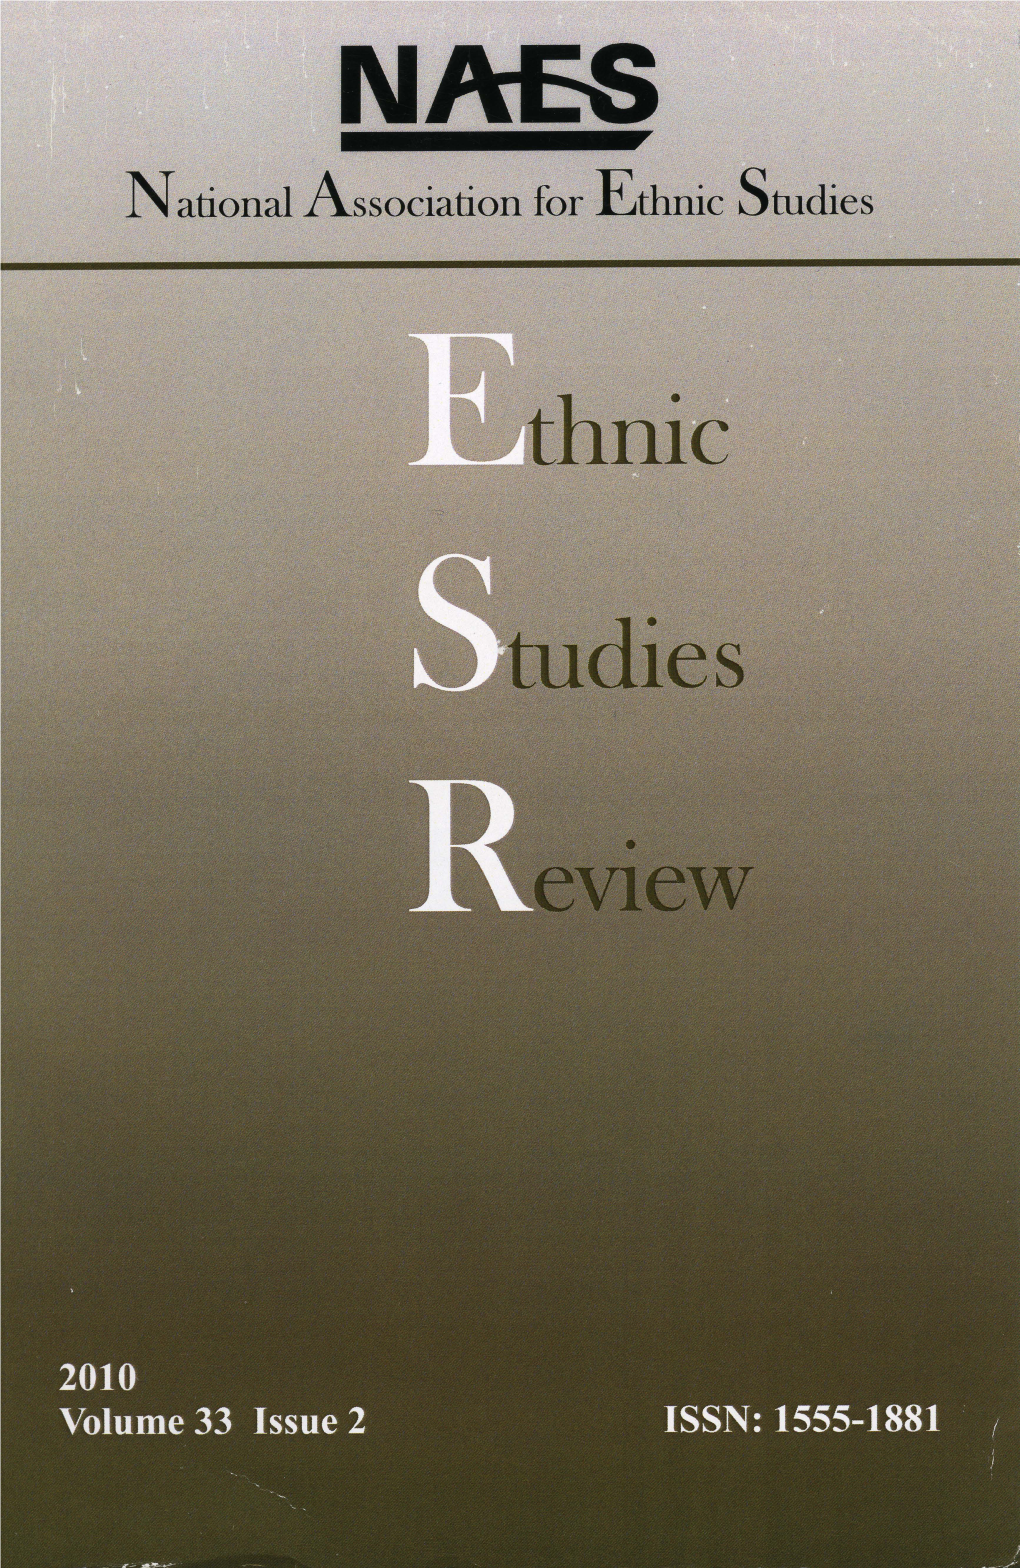 Ethnic Studies Review